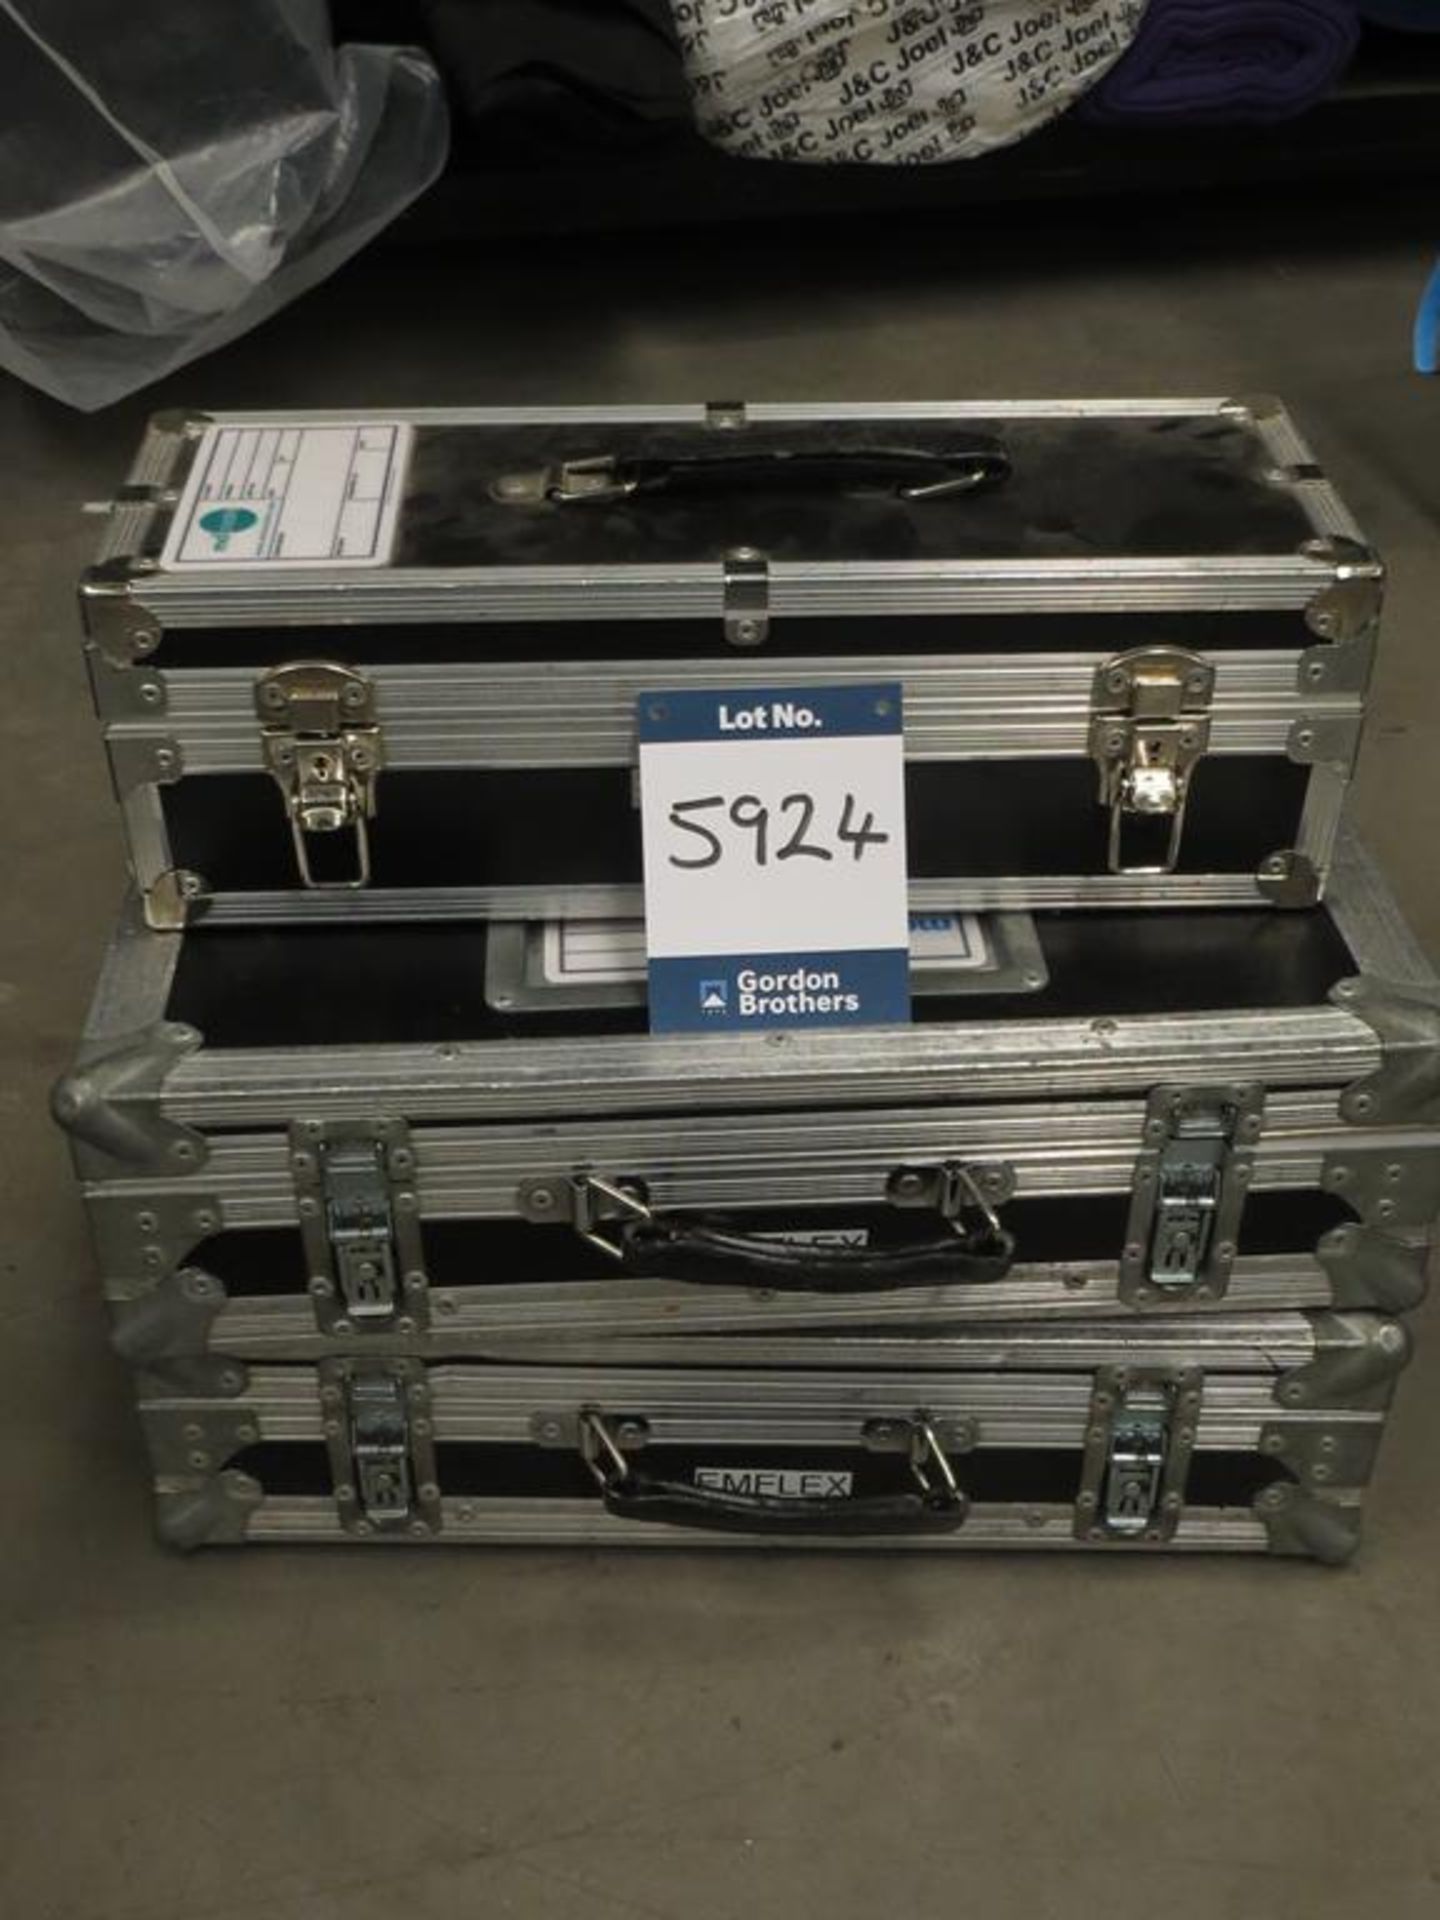 3x No. flight cases, 2x No. 530 x 275 x 140 and 1x